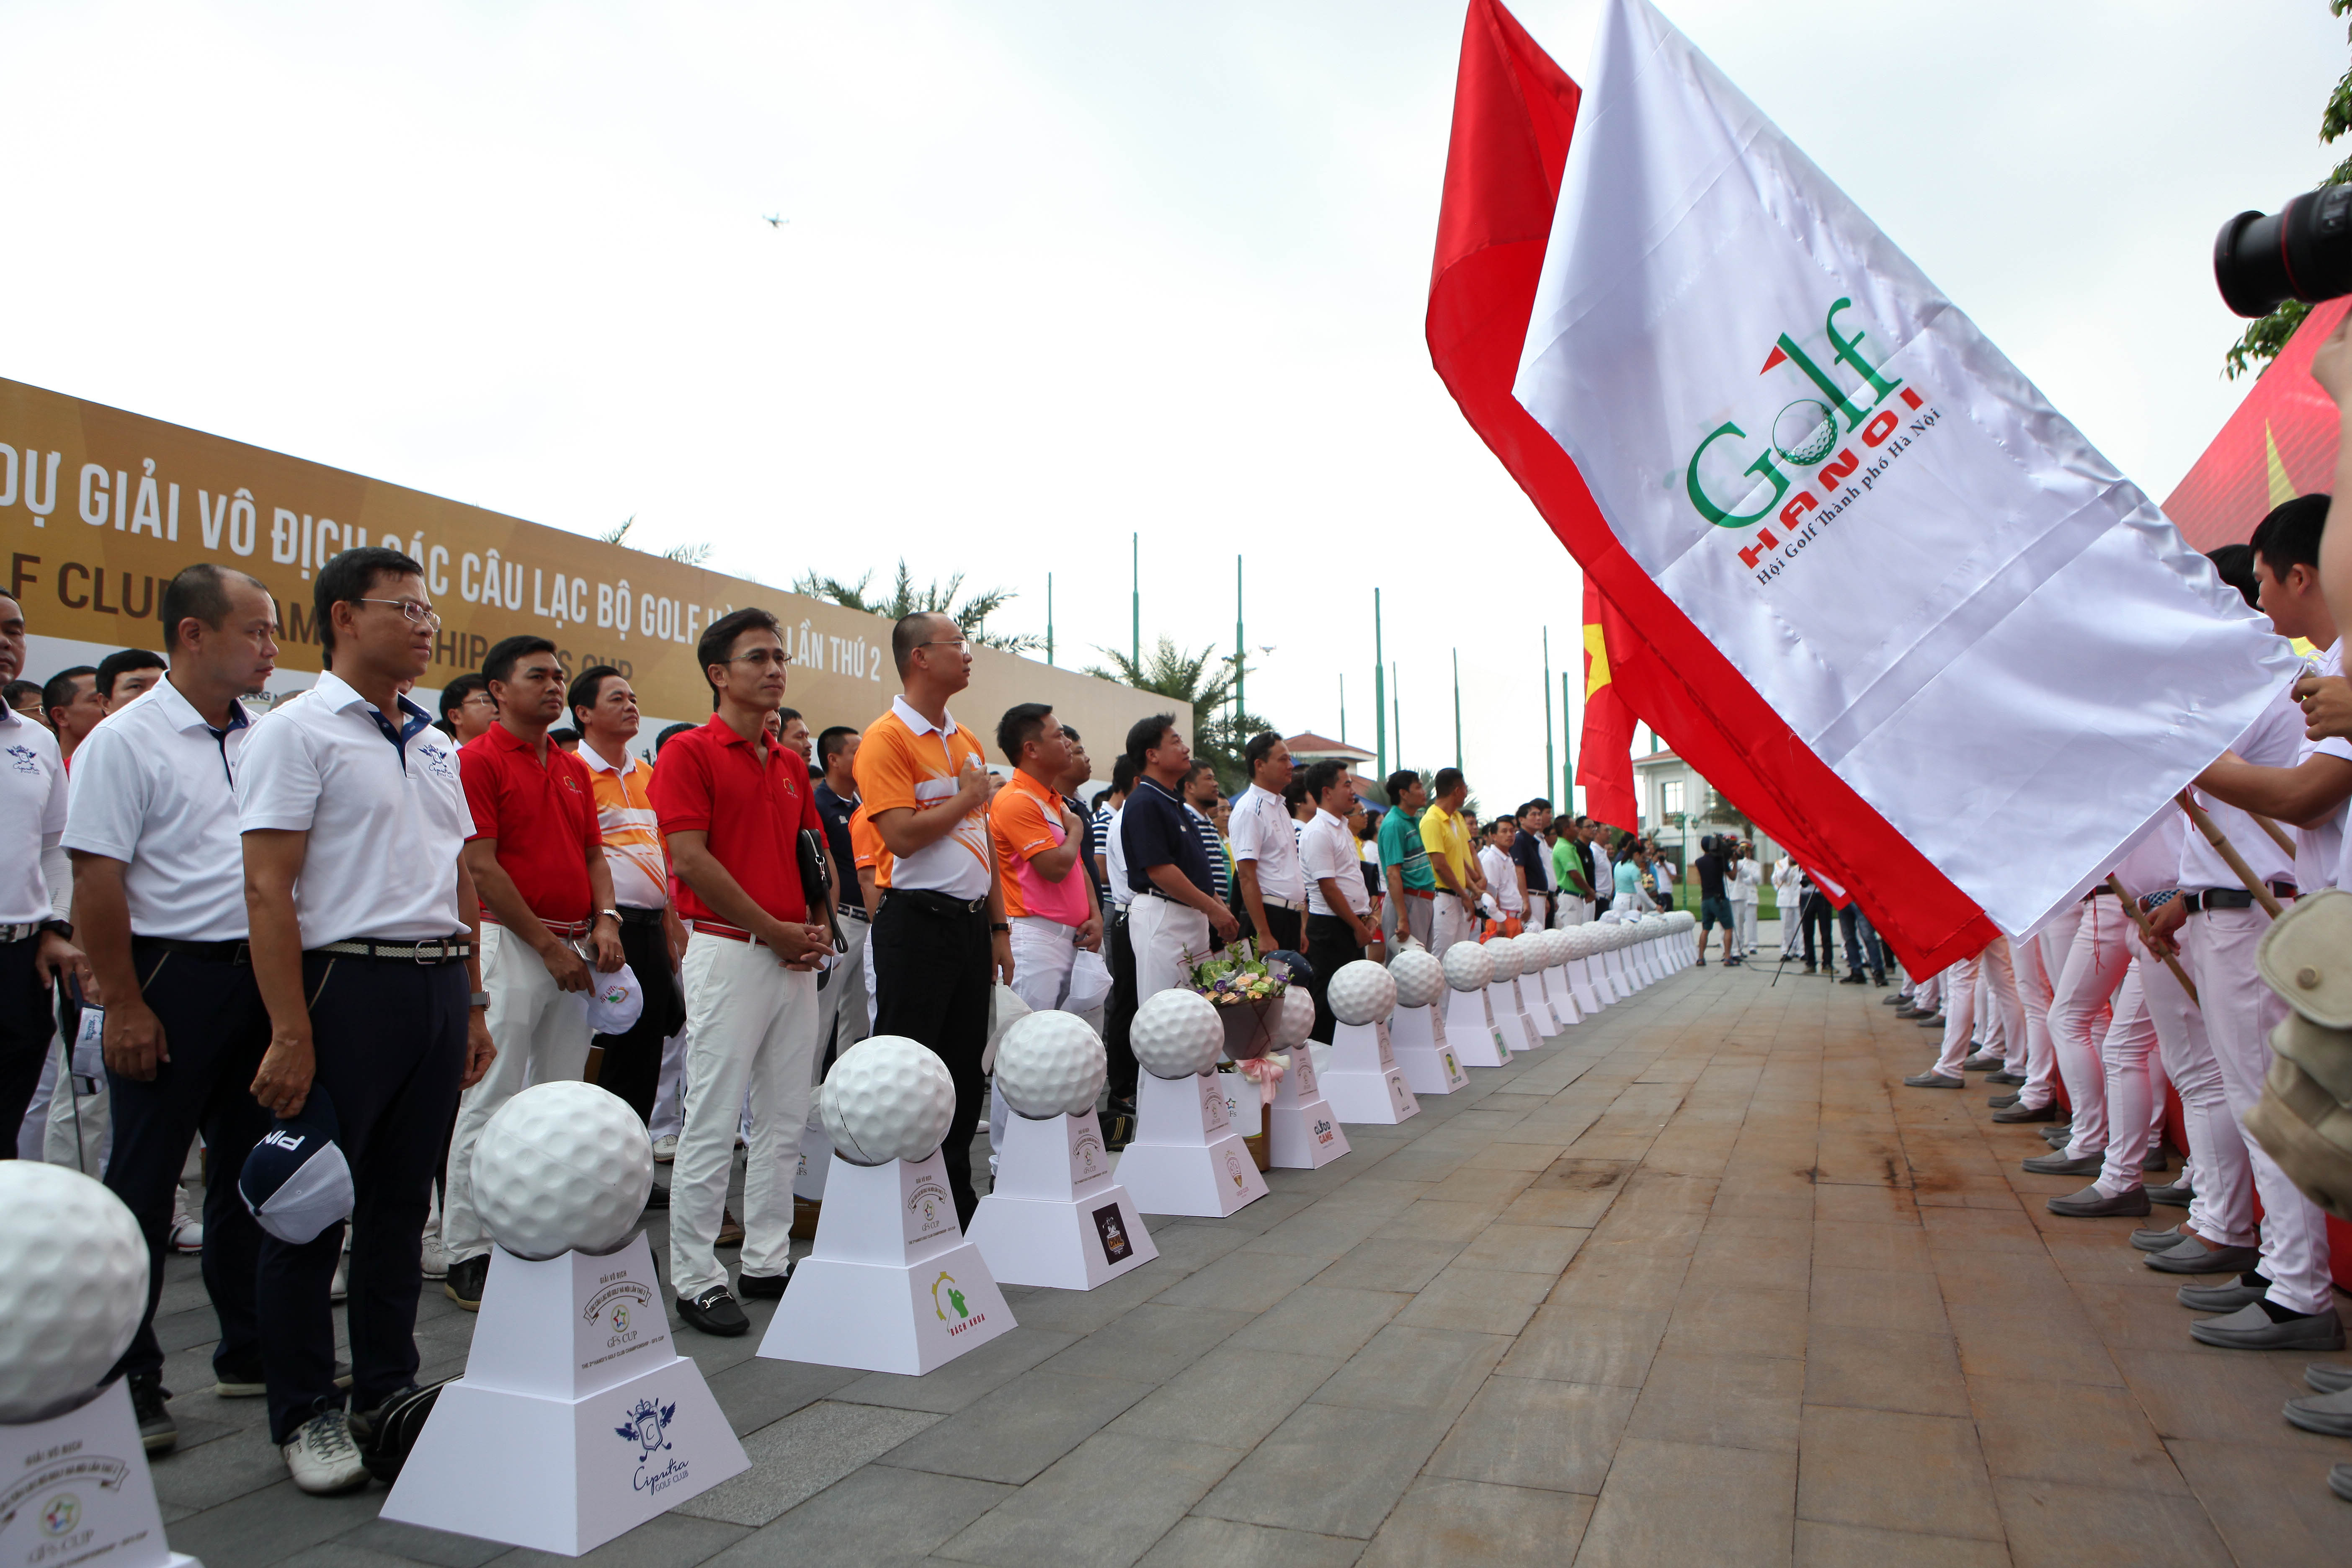 Giải Vô địch các Câu lạc bộ Golf Hà Nội lần thứ II – Cúp GFS chính thức khởi tranh